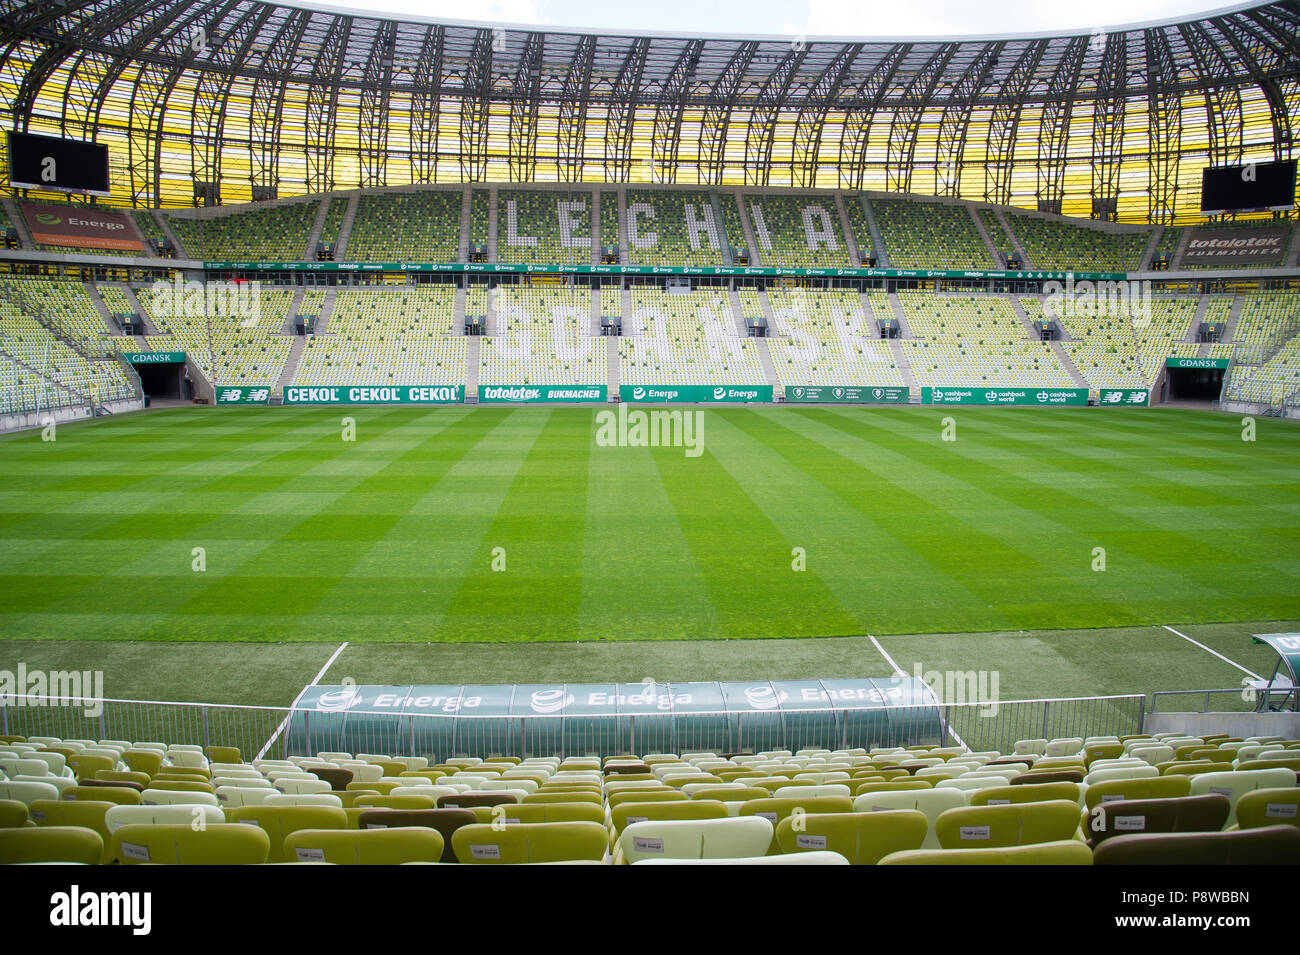 Stadion Energa Danzig, Heimat von Lechia Gdansk Fußballmannschaft, in Danzig, Polen. 23. Juni 2018 © wojciech Strozyk/Alamy Stock Foto Stockfoto